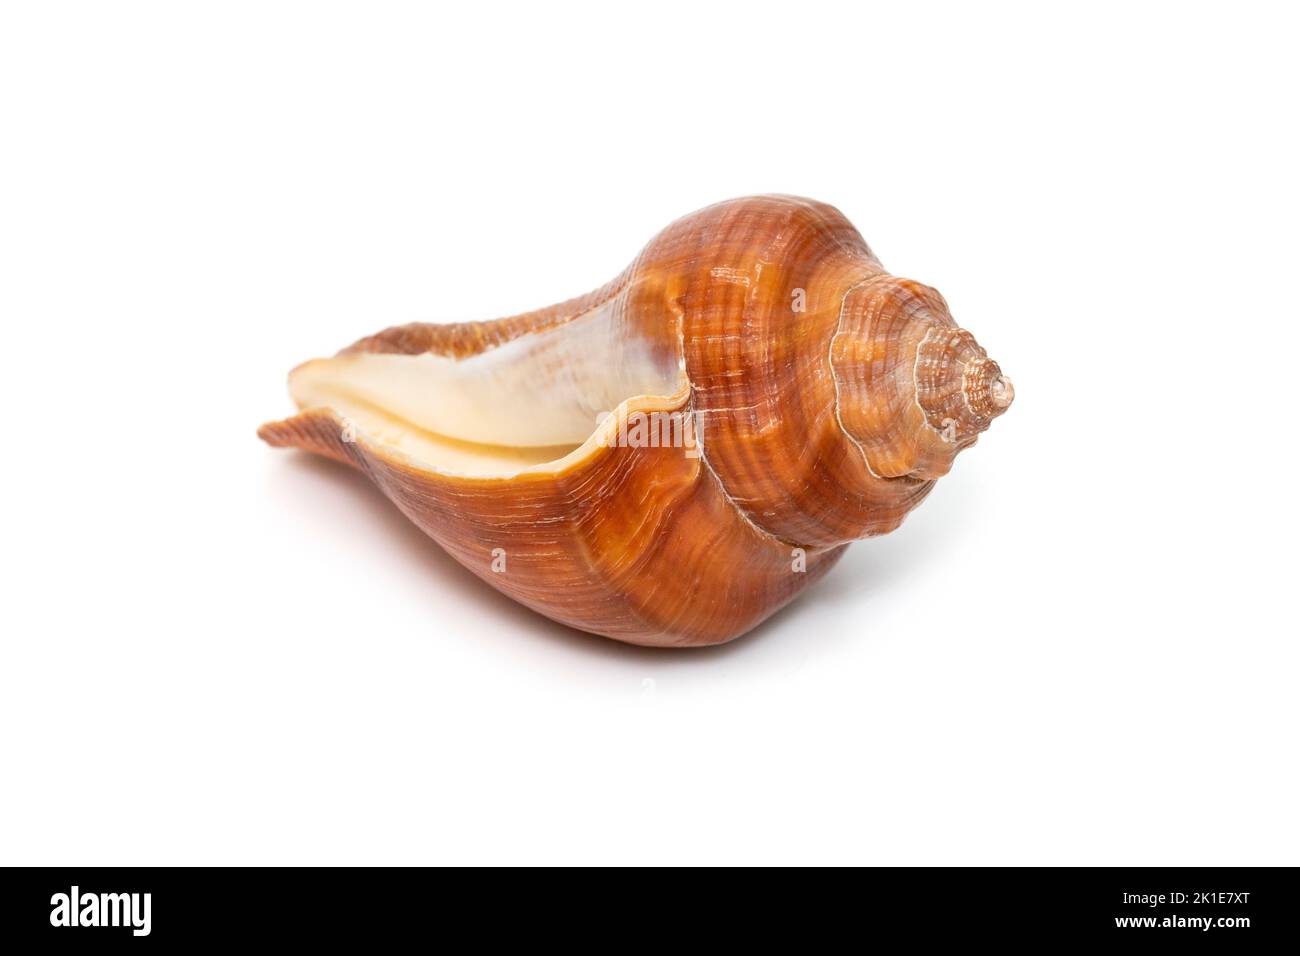 Immagine di pugilina coclidium (spirale melongena) su sfondo bianco. Lumaca del Mar Rosso. Animali sottomarini. Conchiglie di mare. Foto Stock